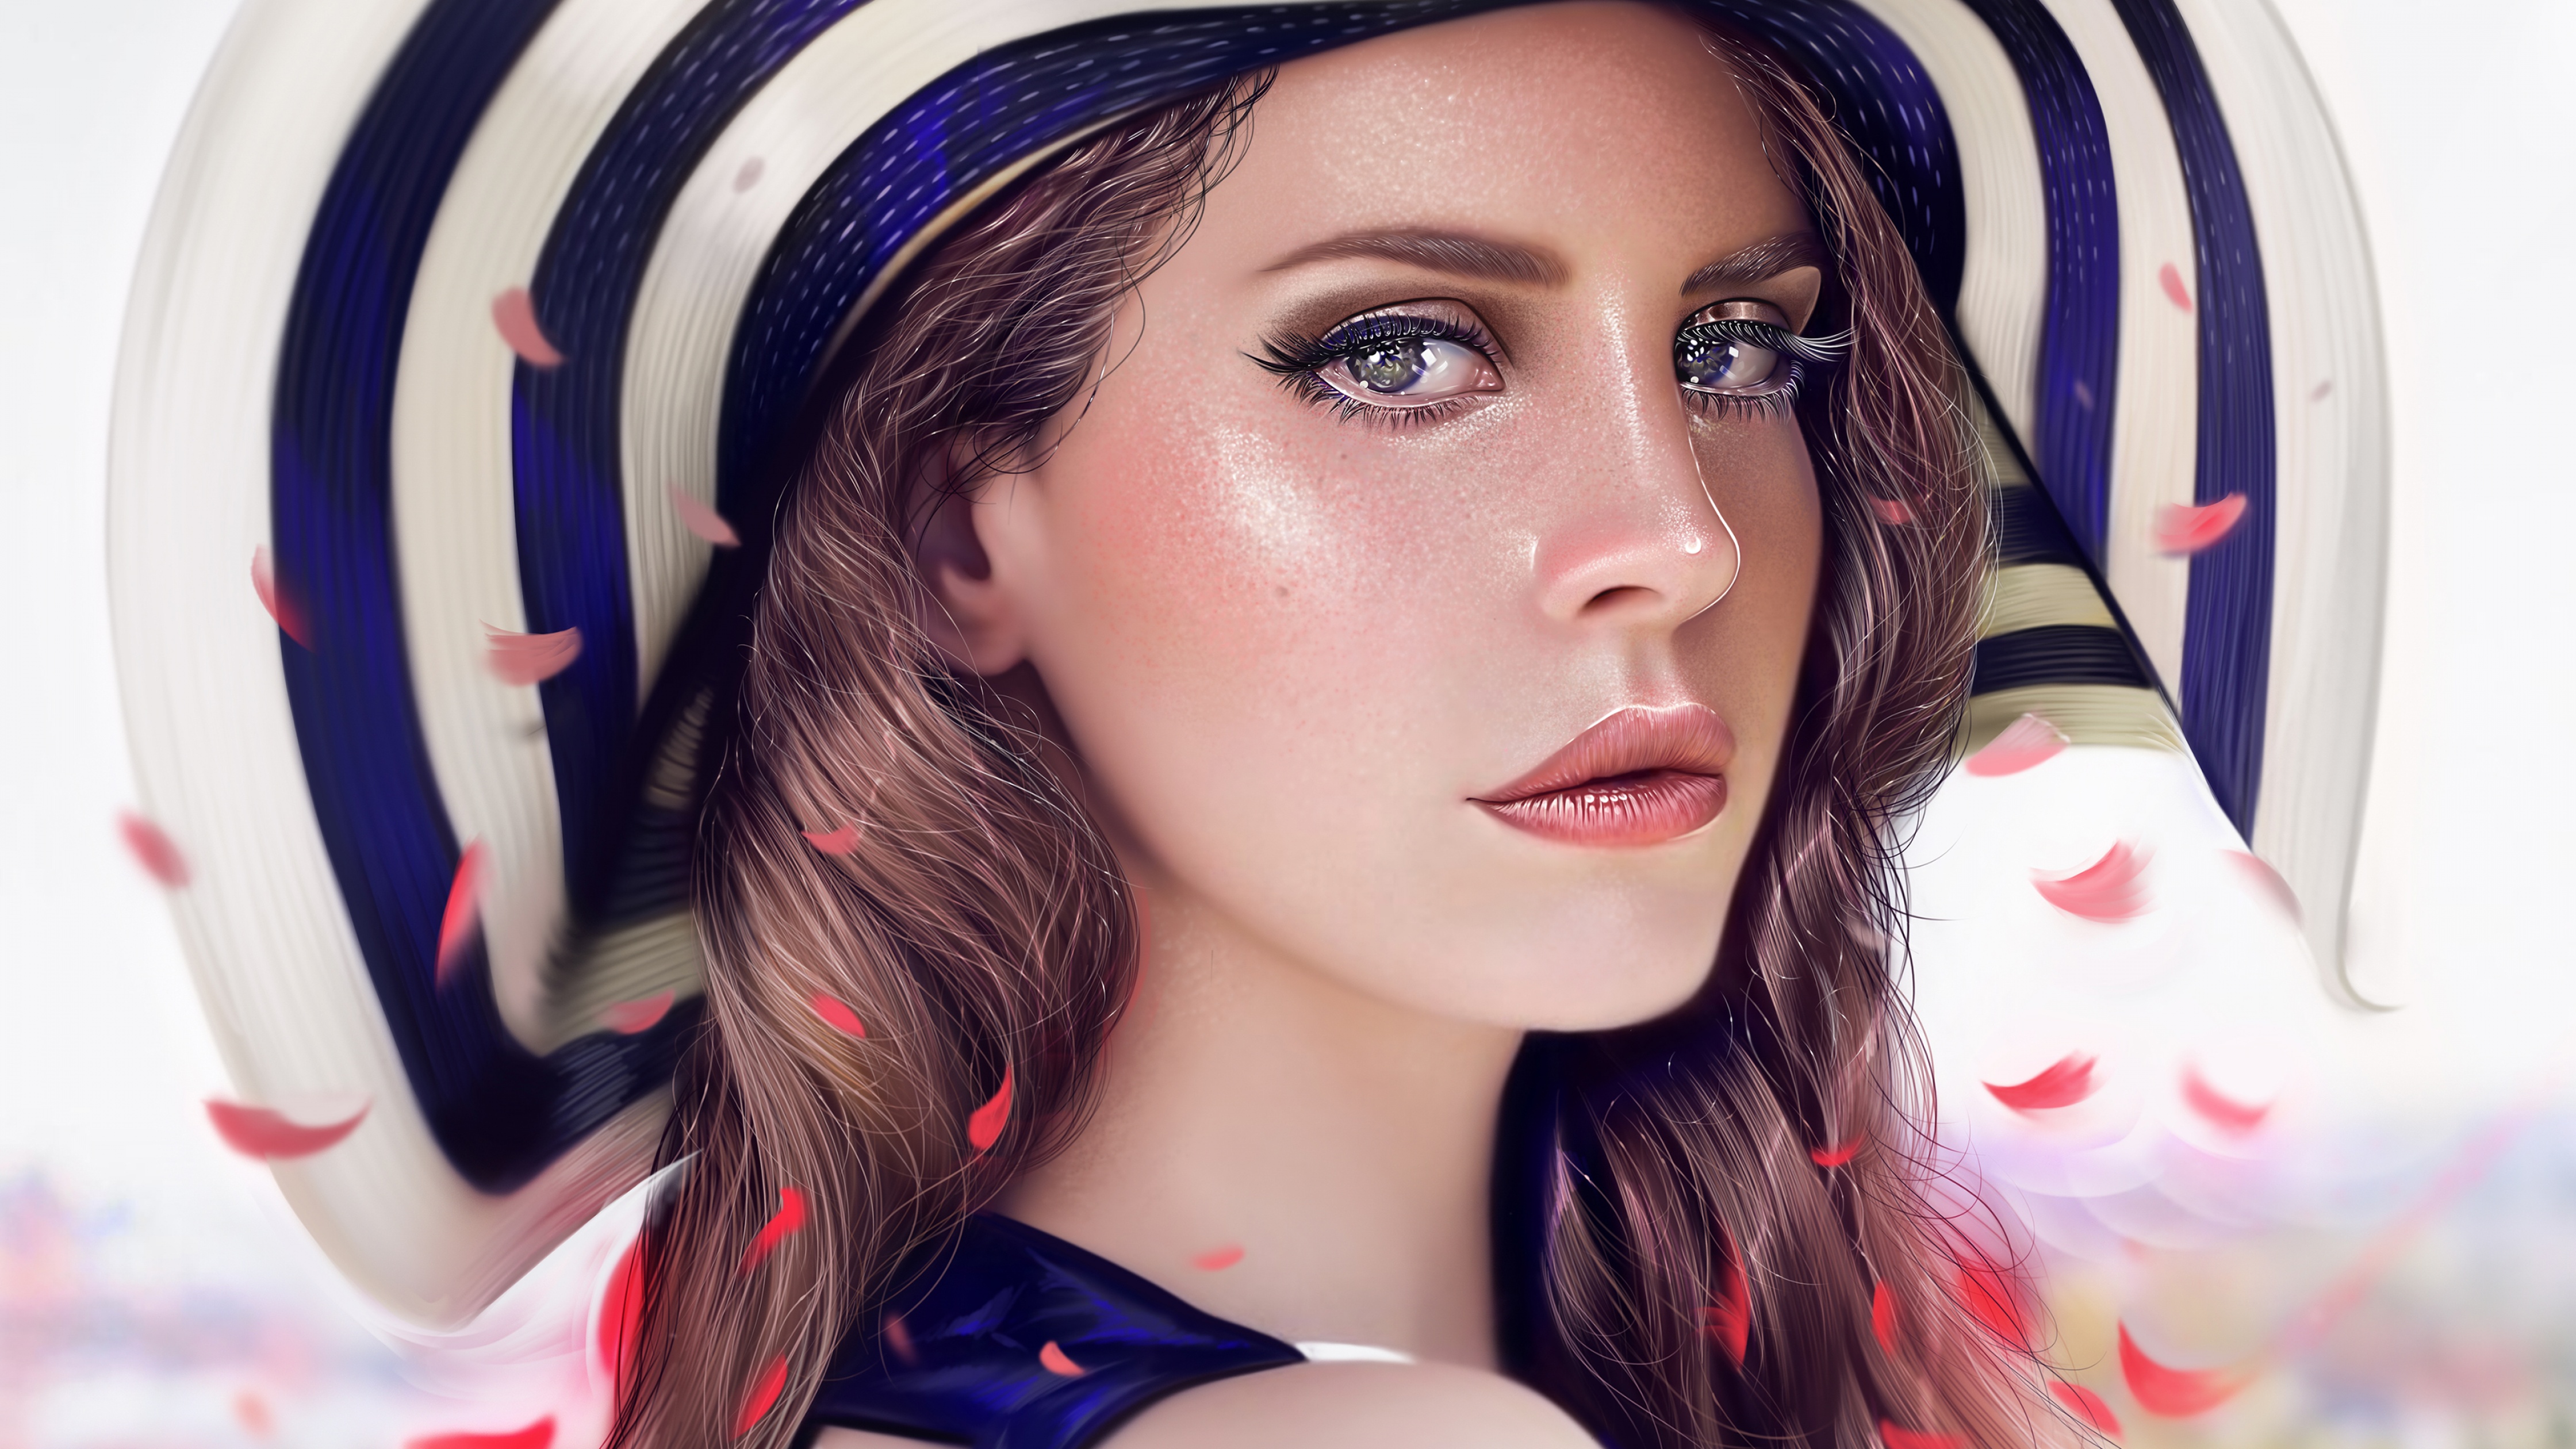 Lana Del Rey Wallpaper 4K, Beautiful